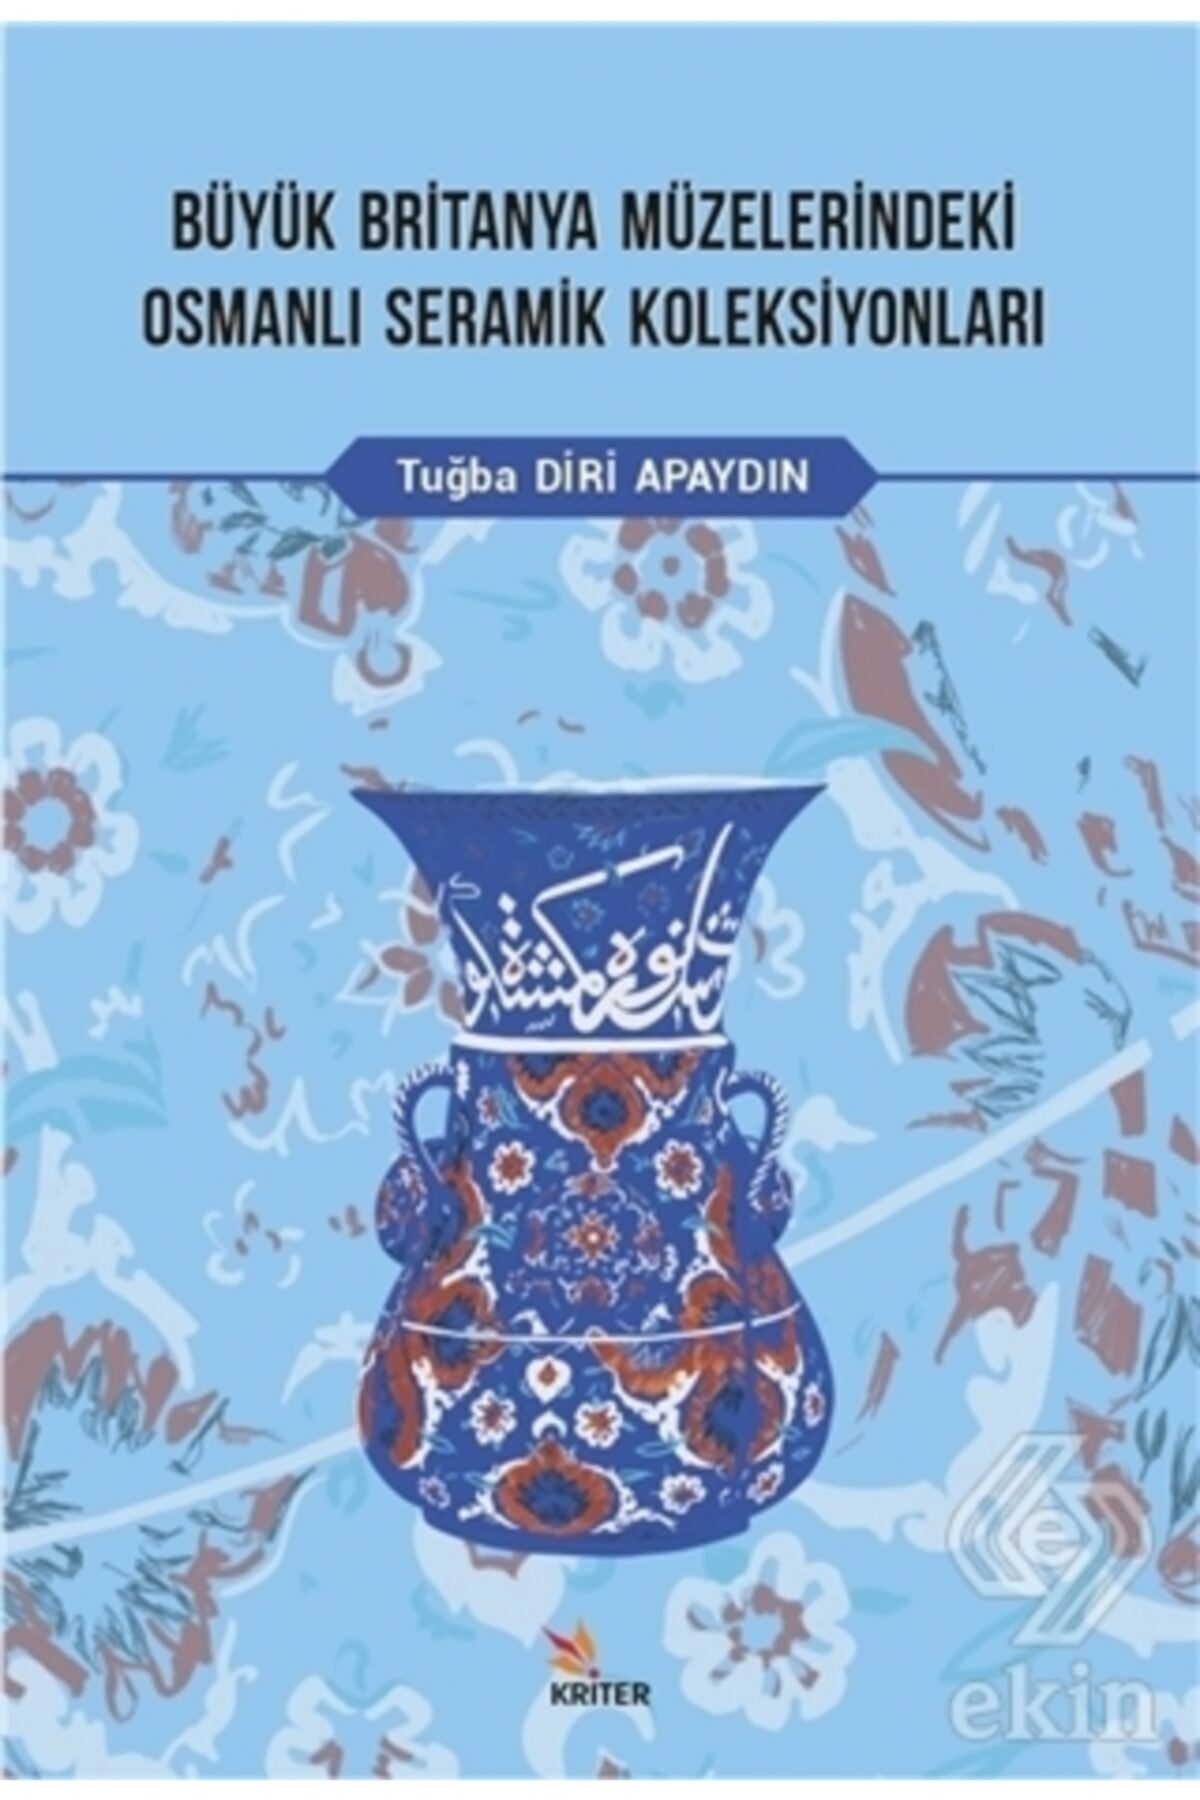 Genel Markalar Büyük Britanya Müzelerindeki Osmanlı Seramik Koleksiyonları - Tuğba Diri Apaydın 978625713067